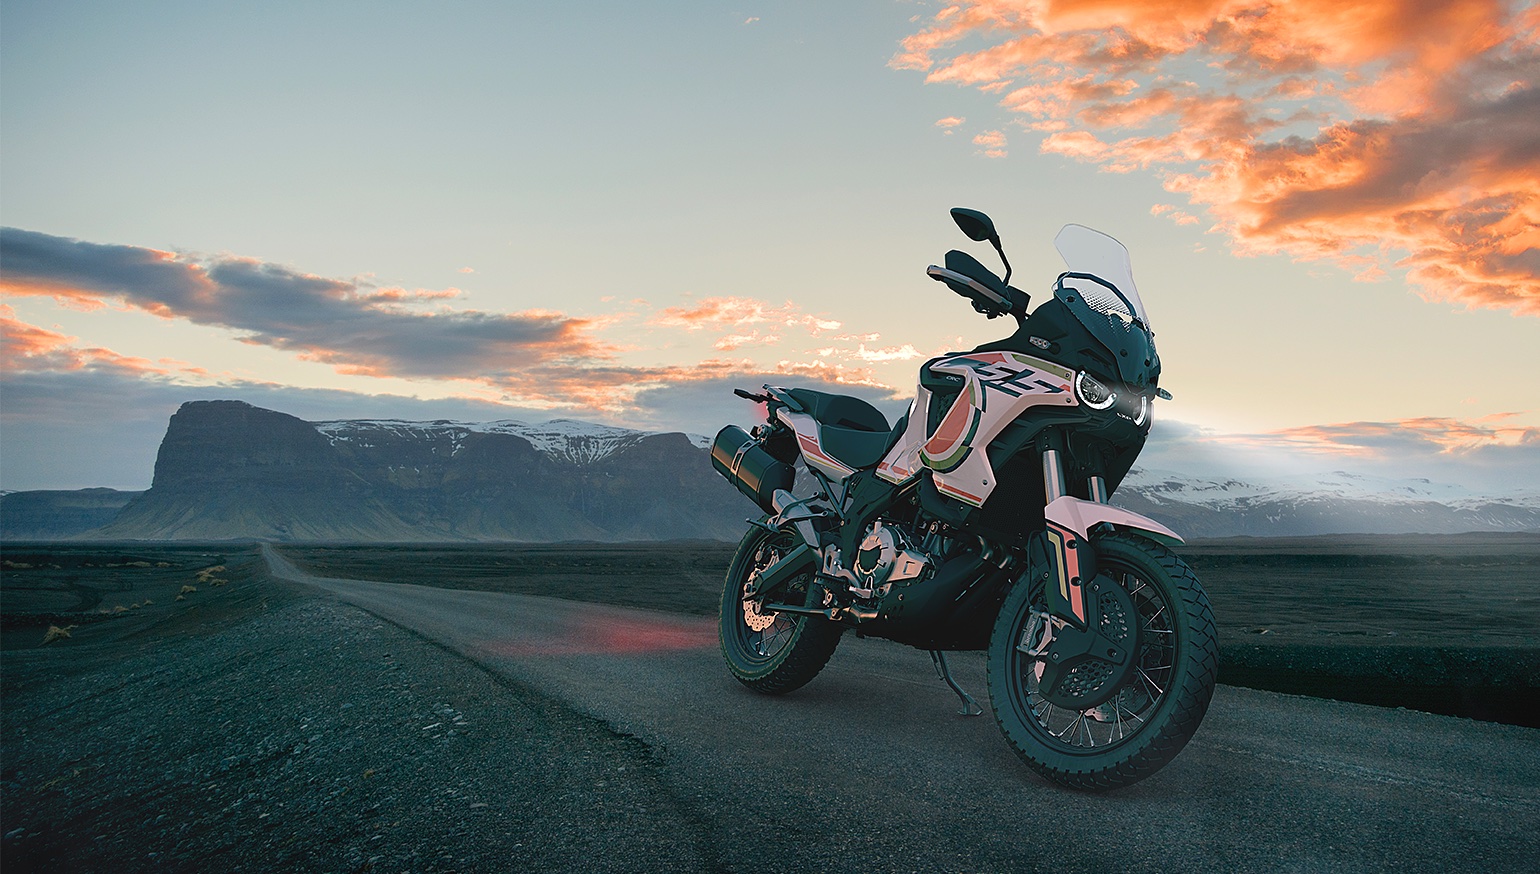 幸运的探险家项目adventurer-touring摩托车从MV Agusta摩托